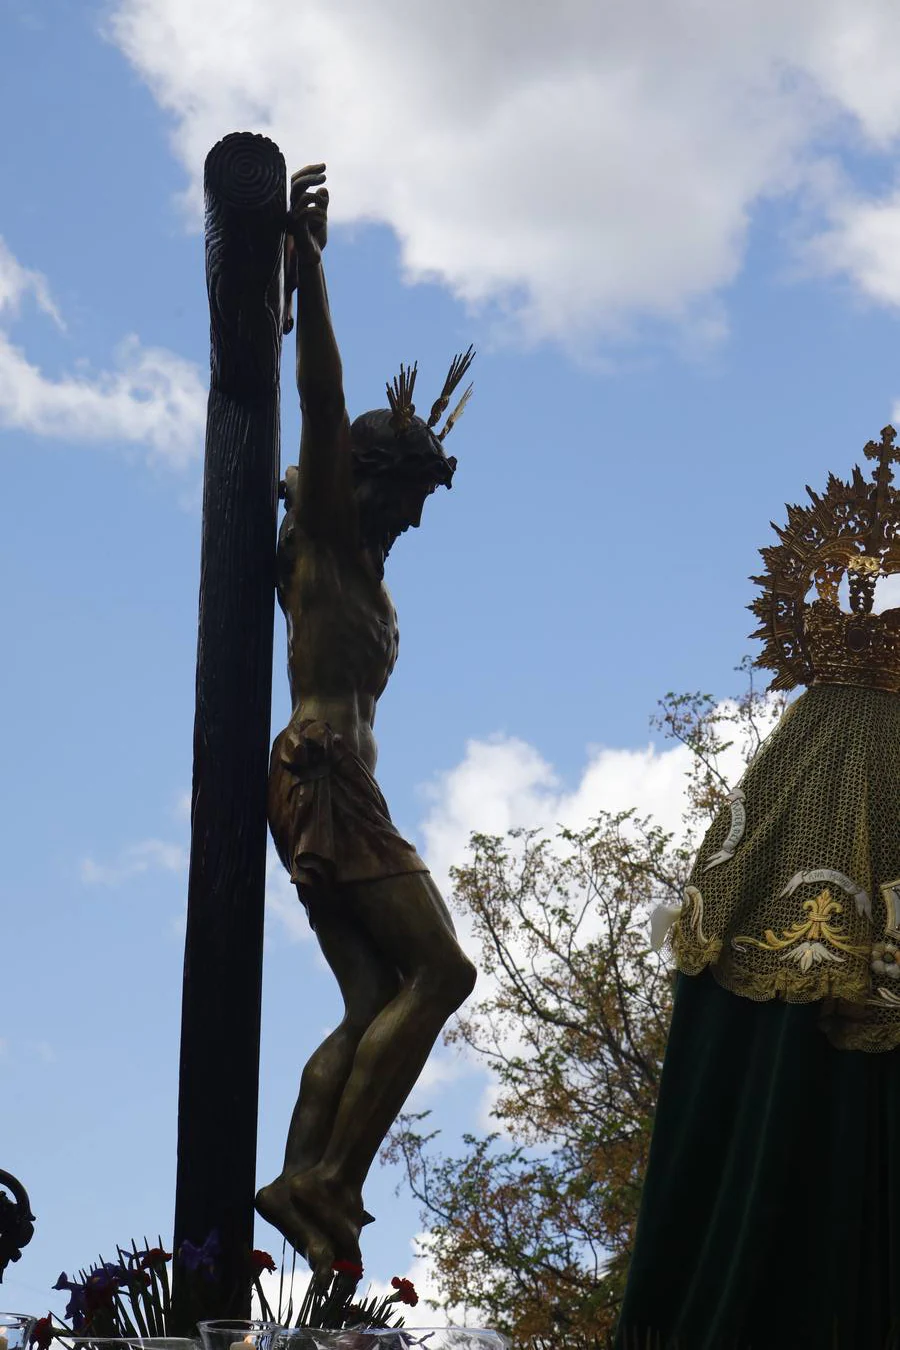 Miércoles Santo | La vibrante salida de la Piedad de Córdoba, en imágenes